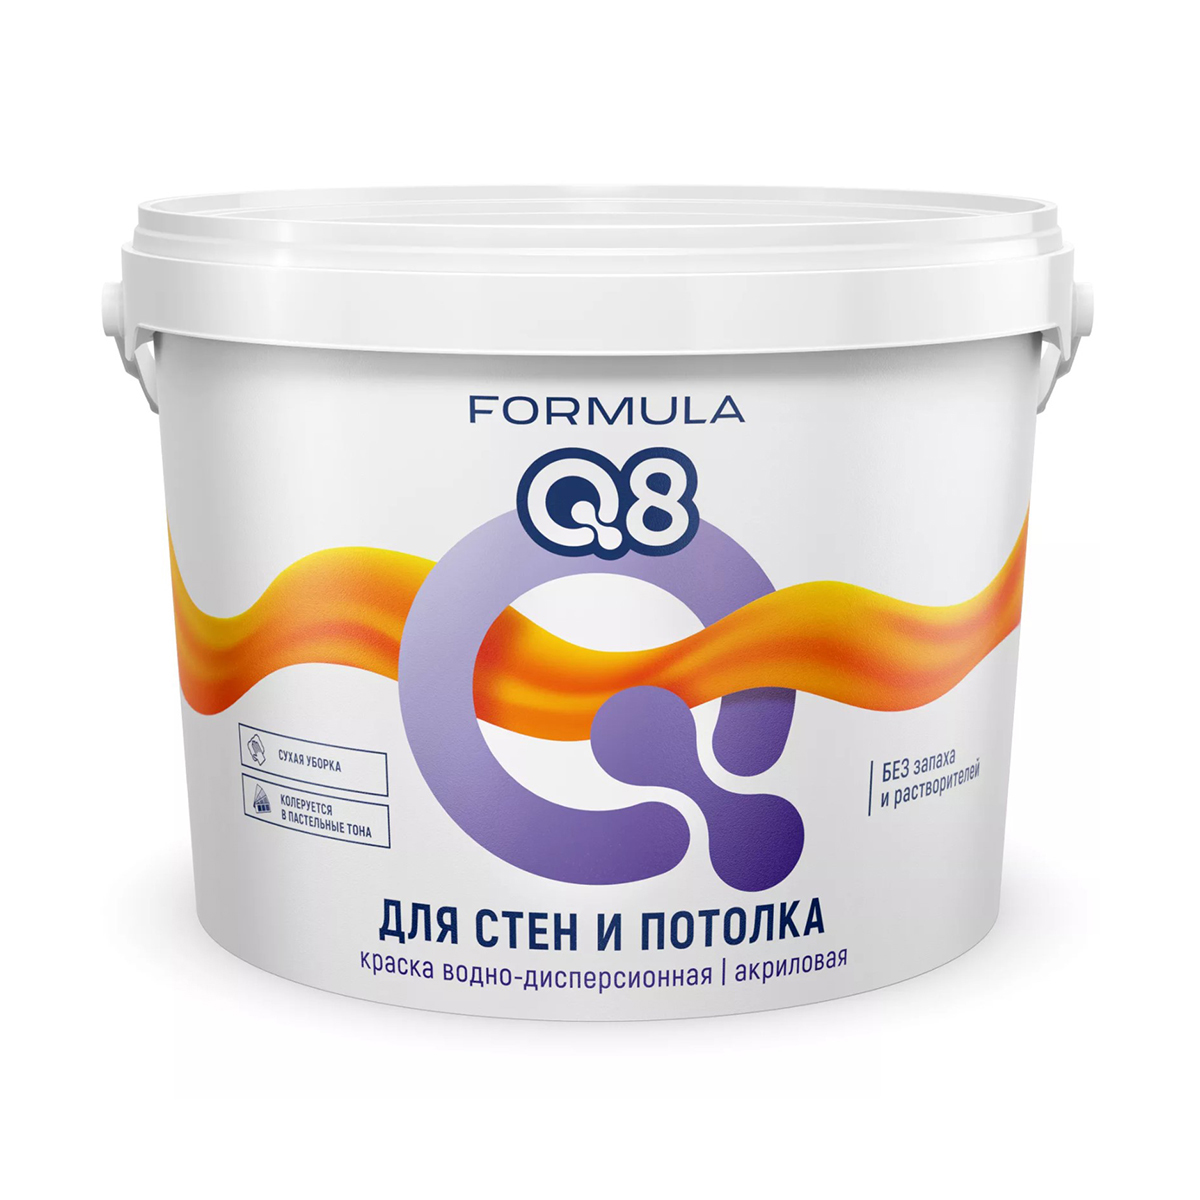 Краска в/д  для стен и потолков "formula q8" 25 кг (1)